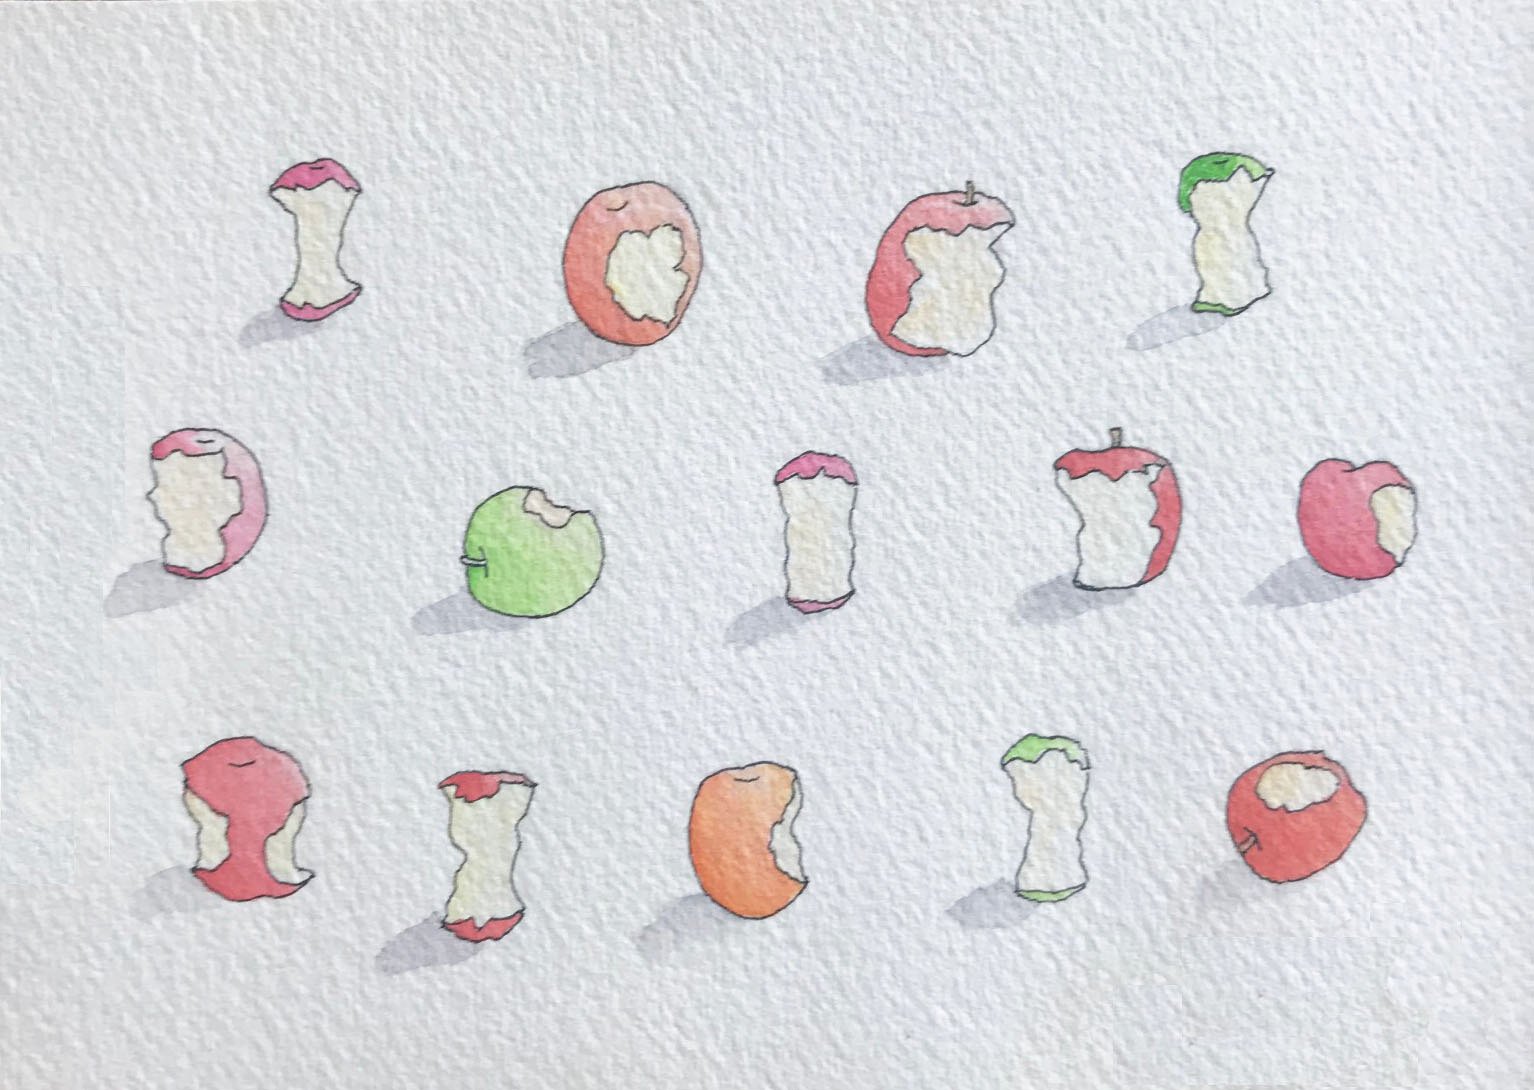 Apples, Slightly Used by Lee Binswanger